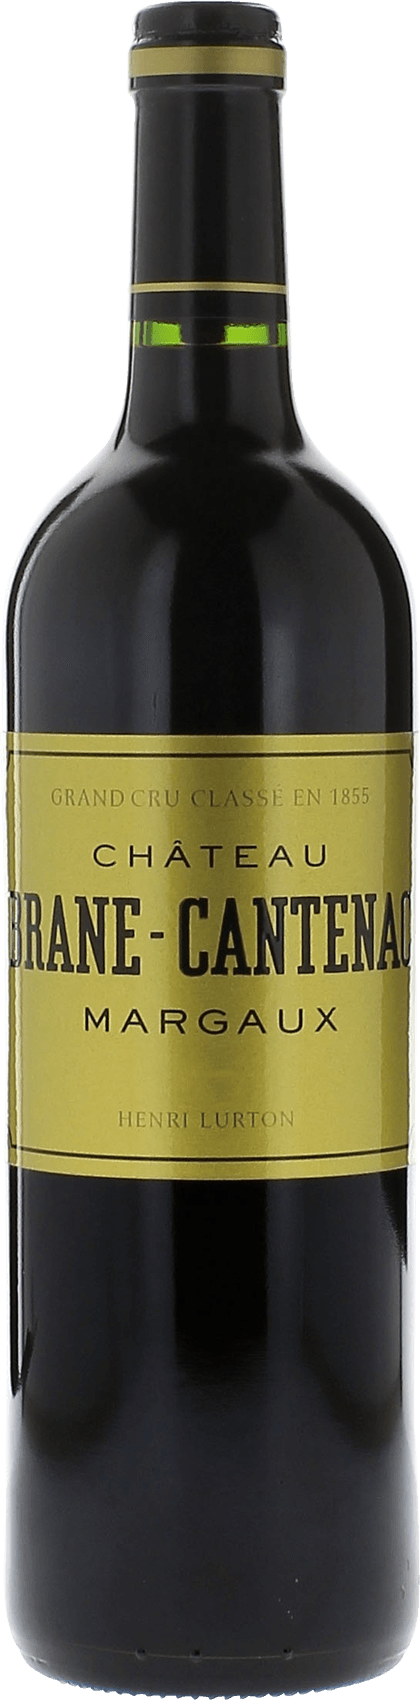 Brane cantenac 1998 2me Grand cru class Margaux, Bordeaux rouge